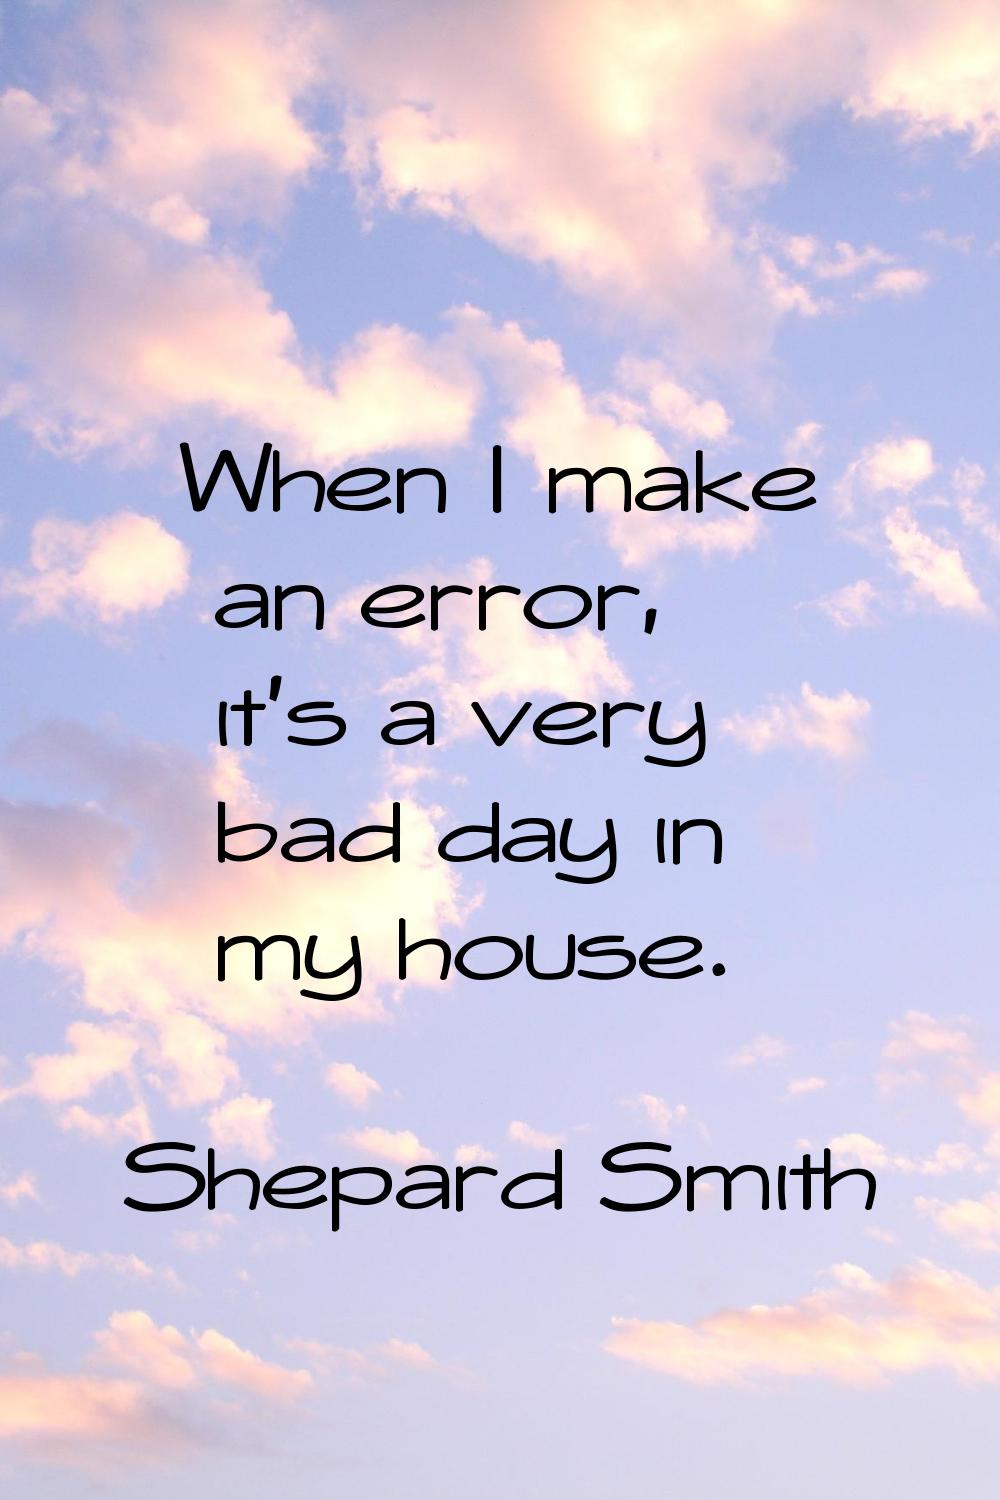 When I make an error, it's a very bad day in my house.